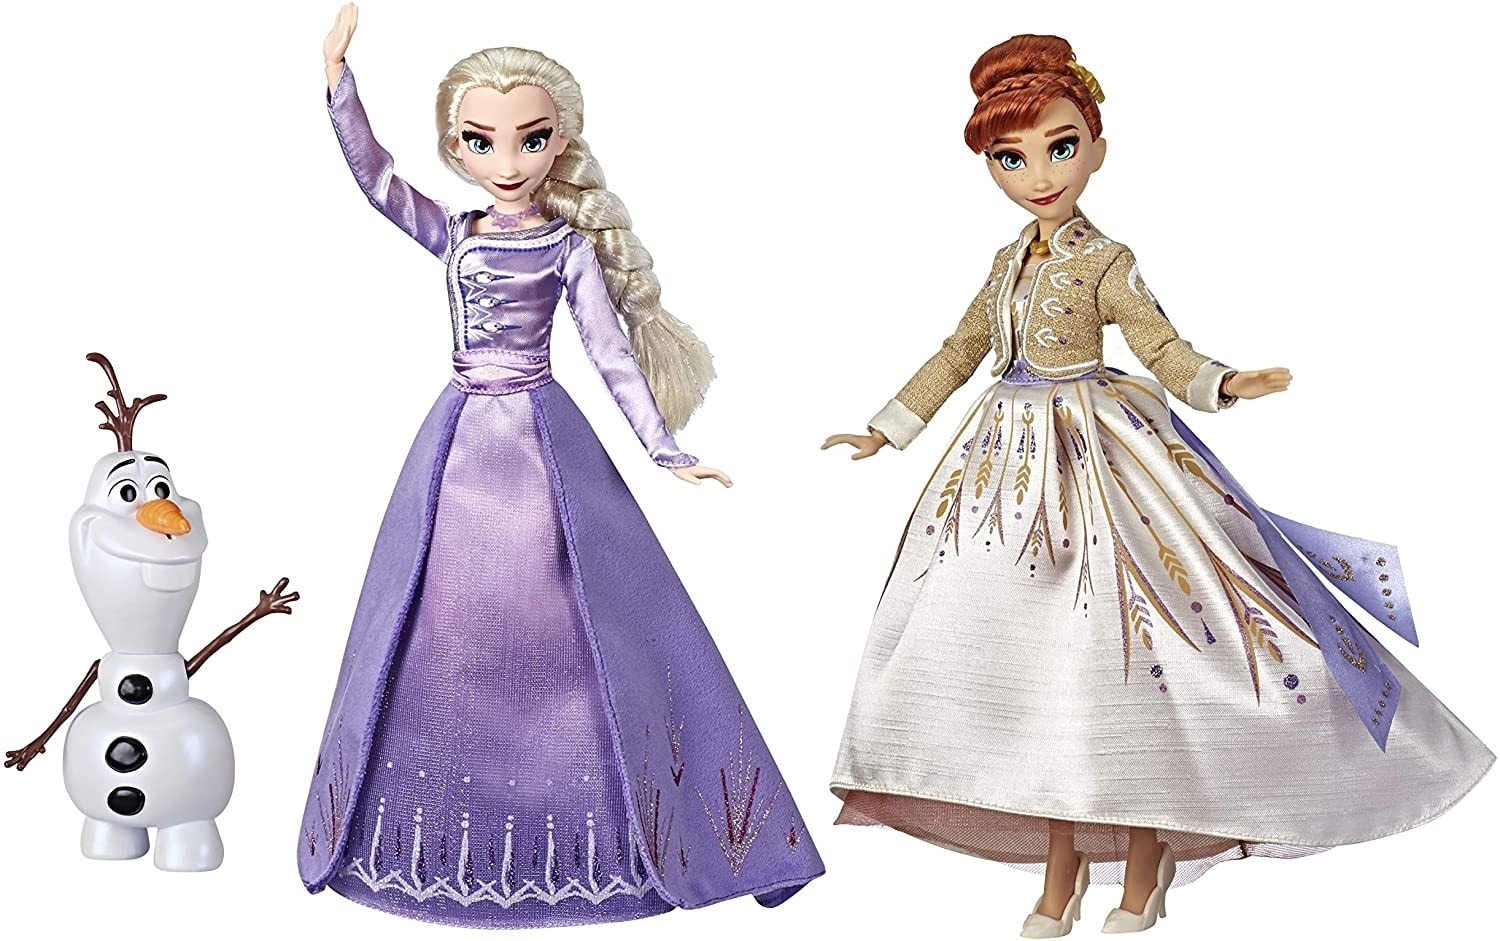 Casque Bluetooth La Reine des neiges Film Disney Son sans fil adapté aux  enfants avec graphismes Anna et Elsa 